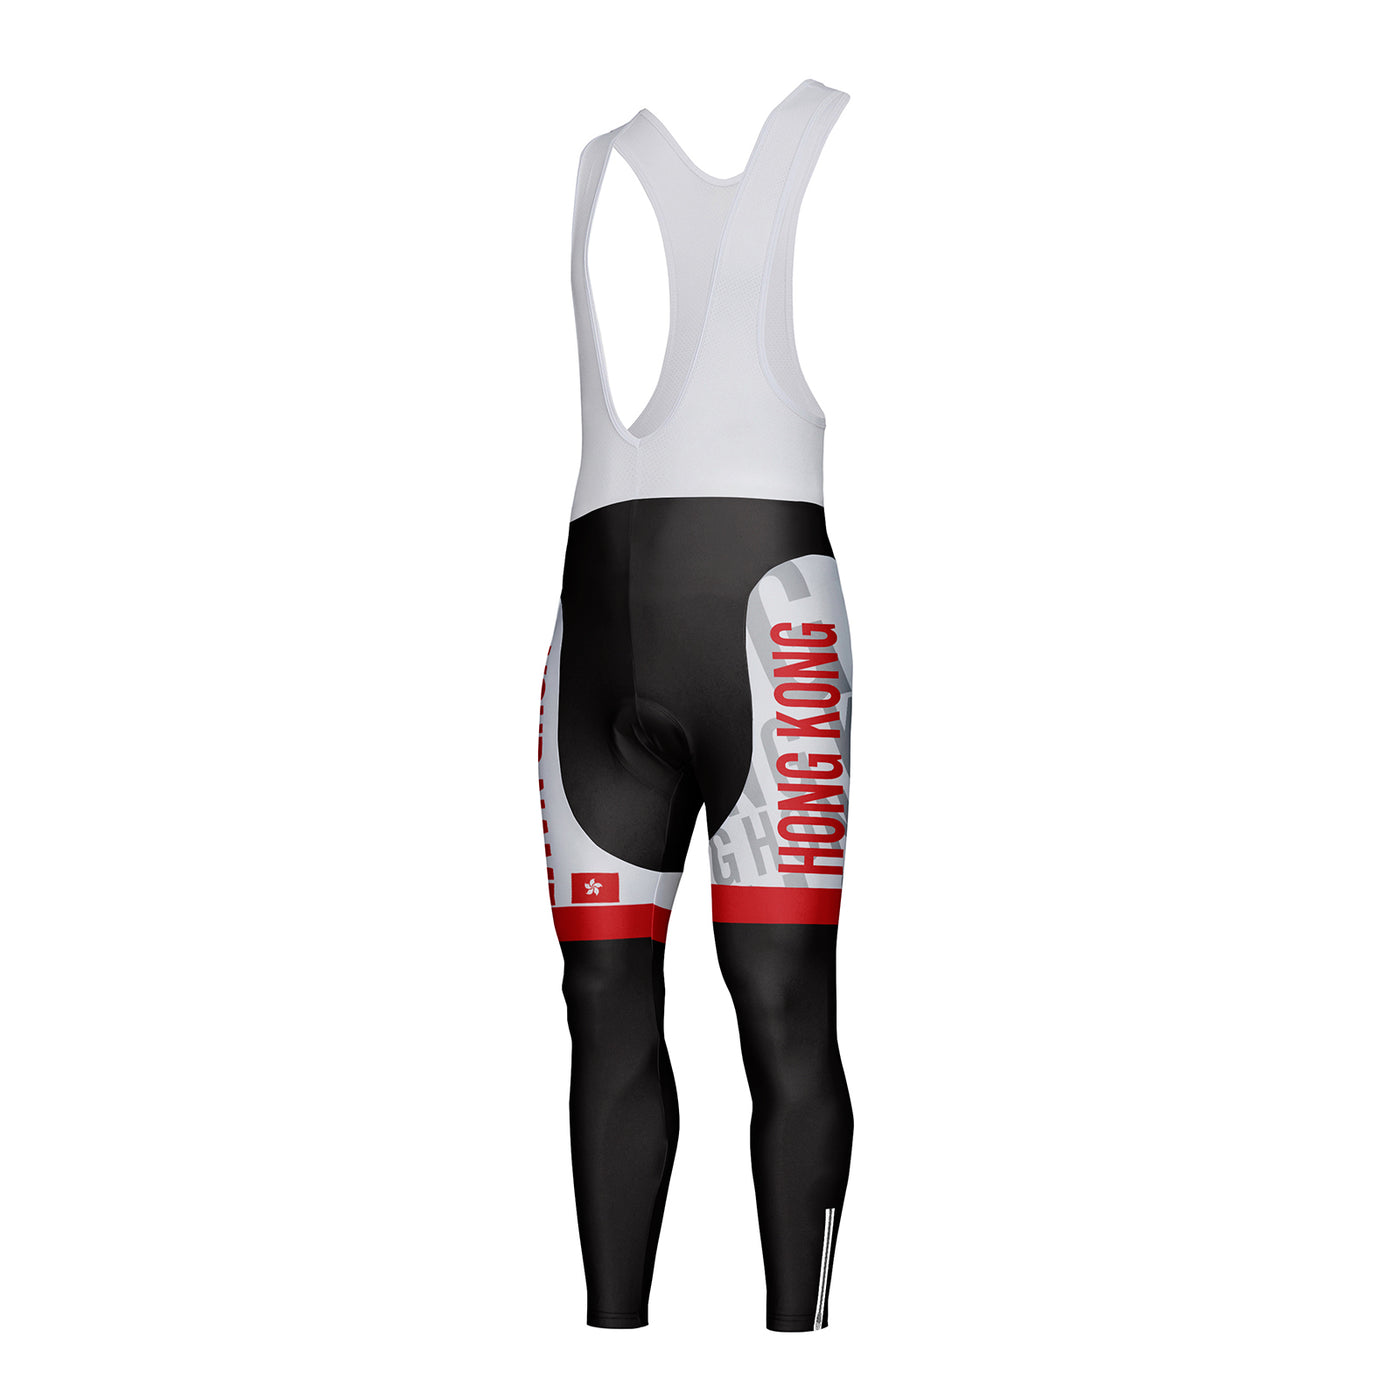 Customized Hong Kong Unisex Cycling Bib Tights Long Pants